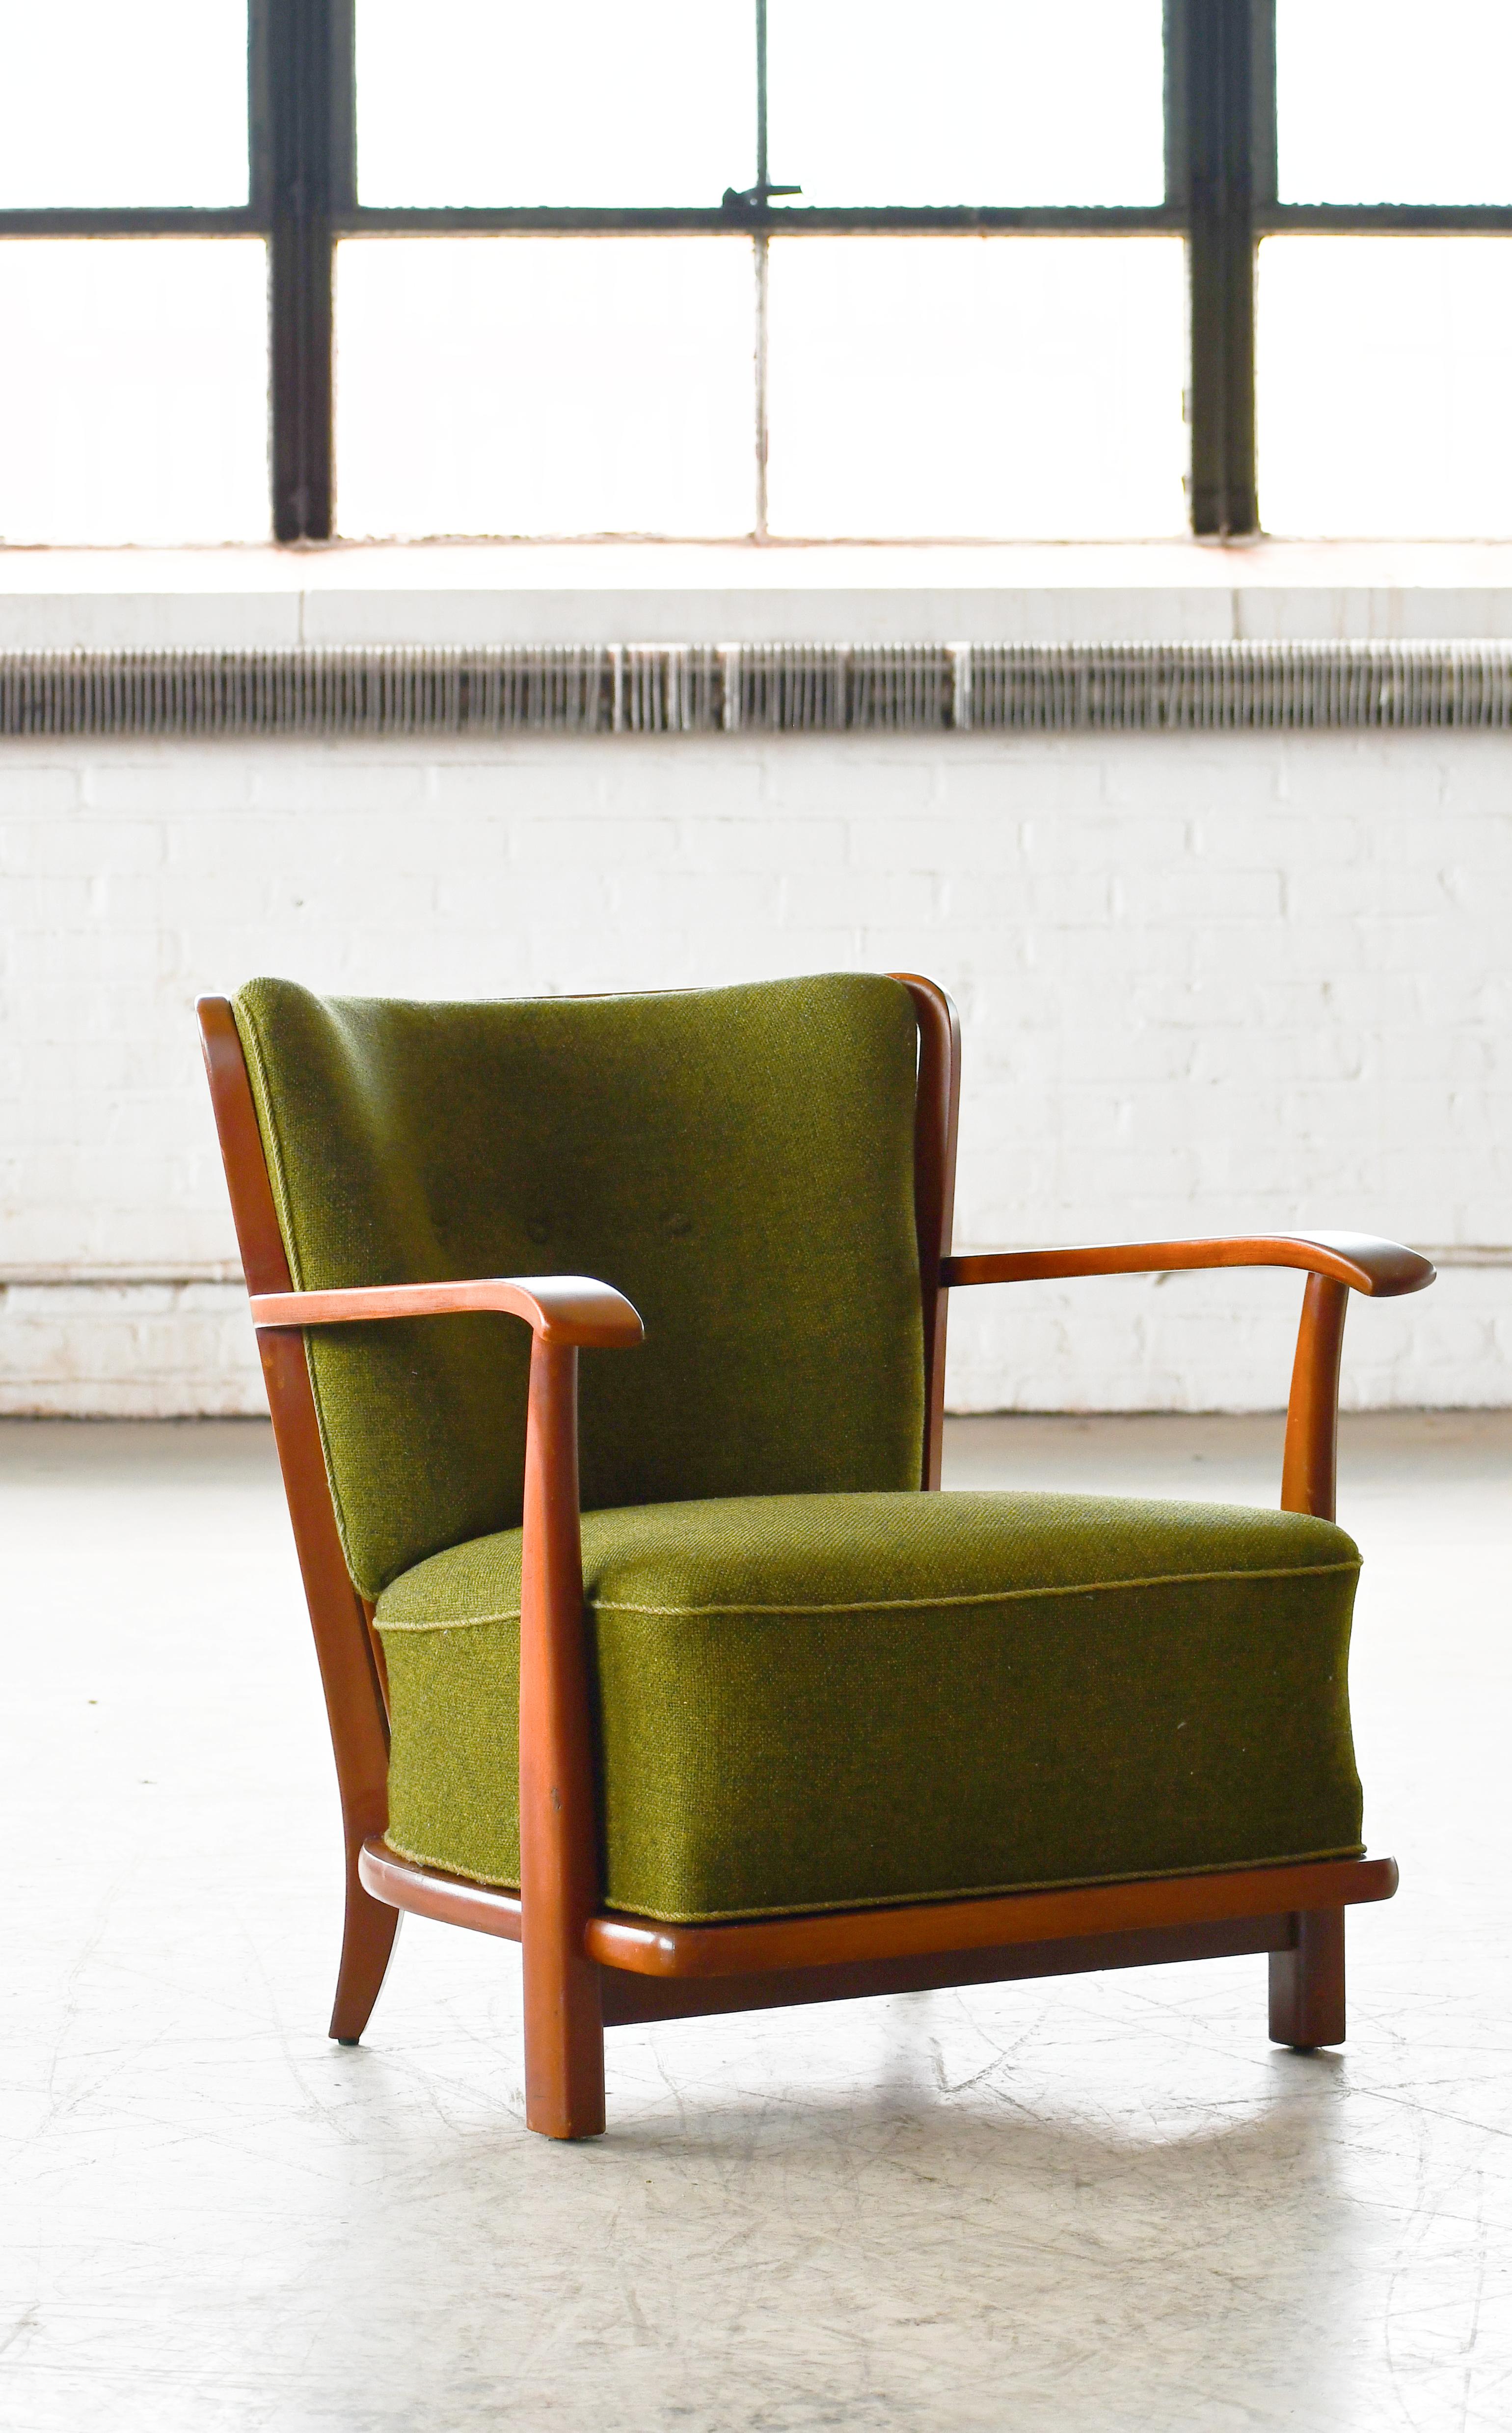 Chaise longue de style superbe, modèle 1594, attribuée à Frits Schlegel et fabriquée par Fritz Hansen au début des années 1940. Très rare sur le marché actuel. La chaise a été vue dans le catalogue numéro 4202 d'Hansen en 1942. Le tissu a été